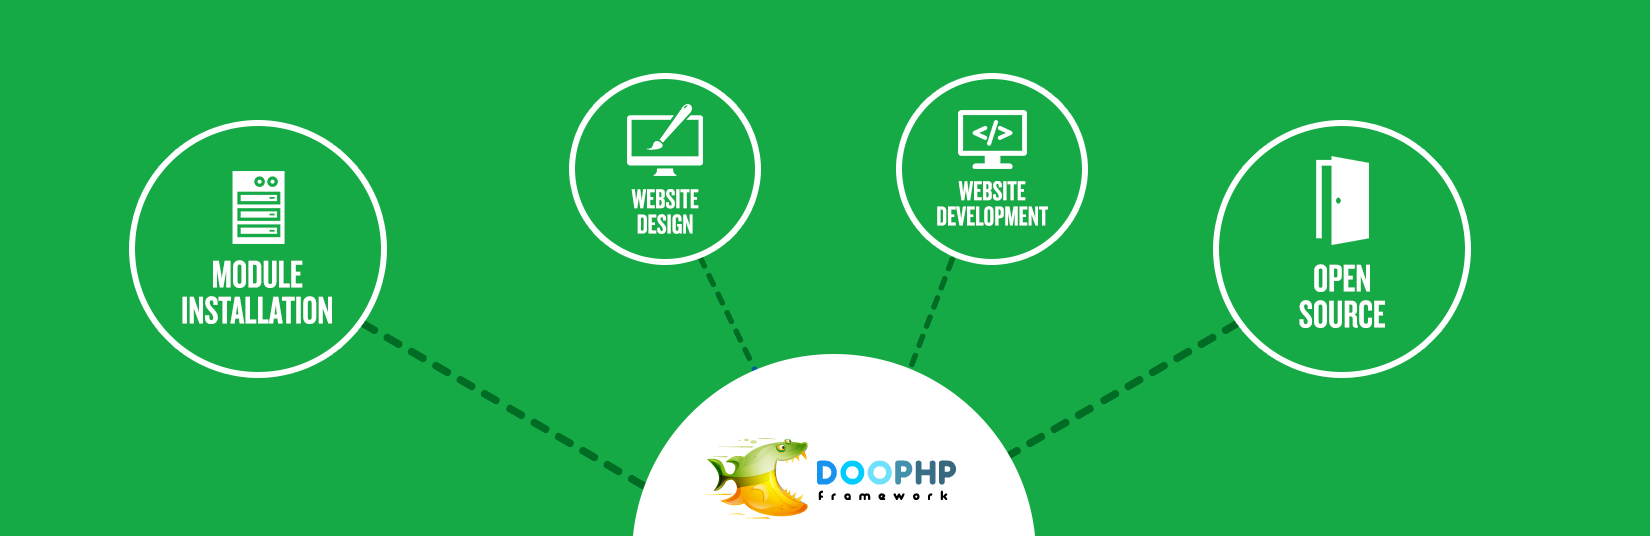 DOO PHP Development